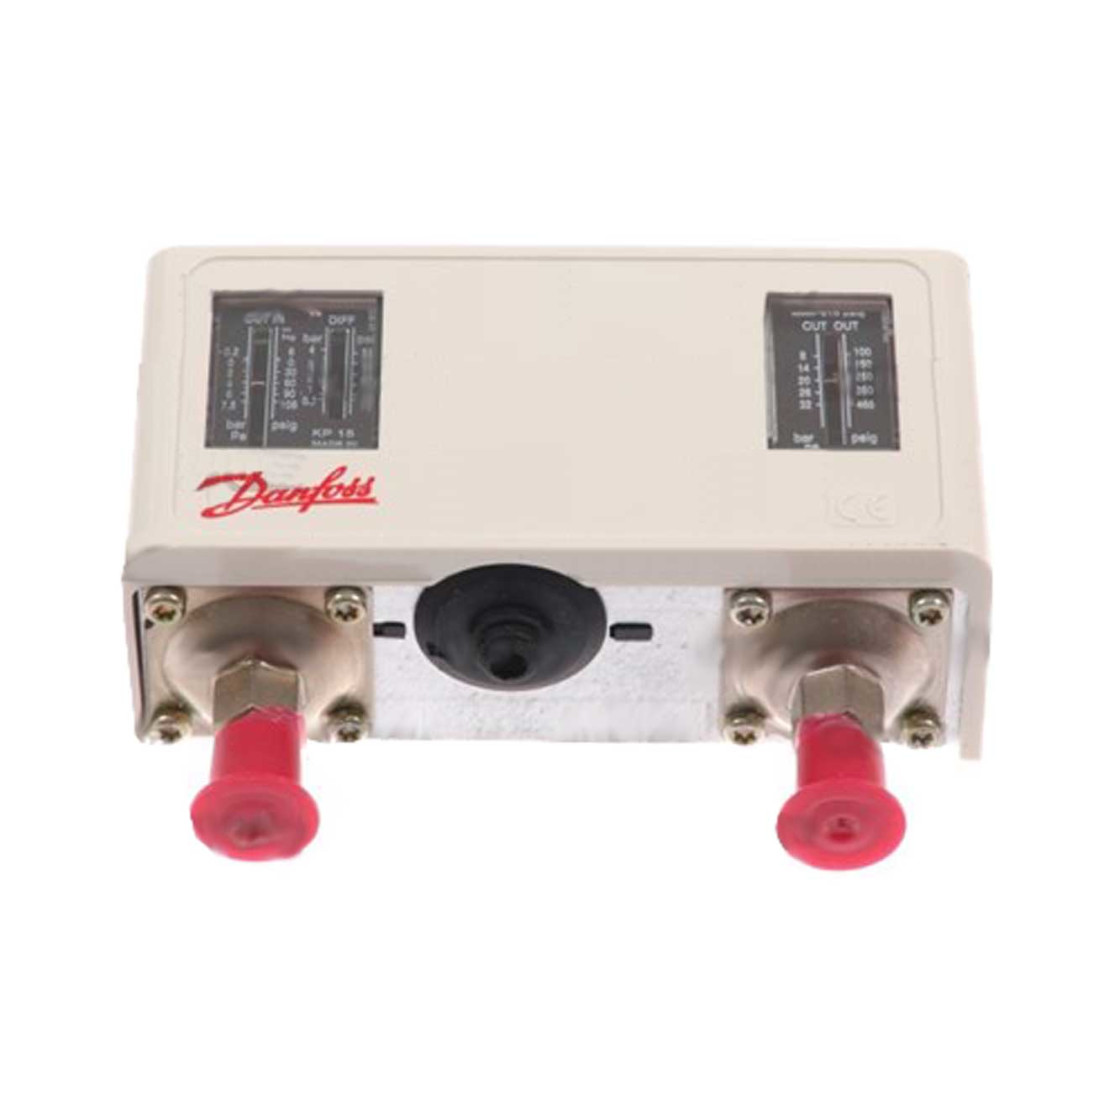 Druckschalter Danfoss KP15 Dual Pressure Switch Reset Funktion 060-115466 